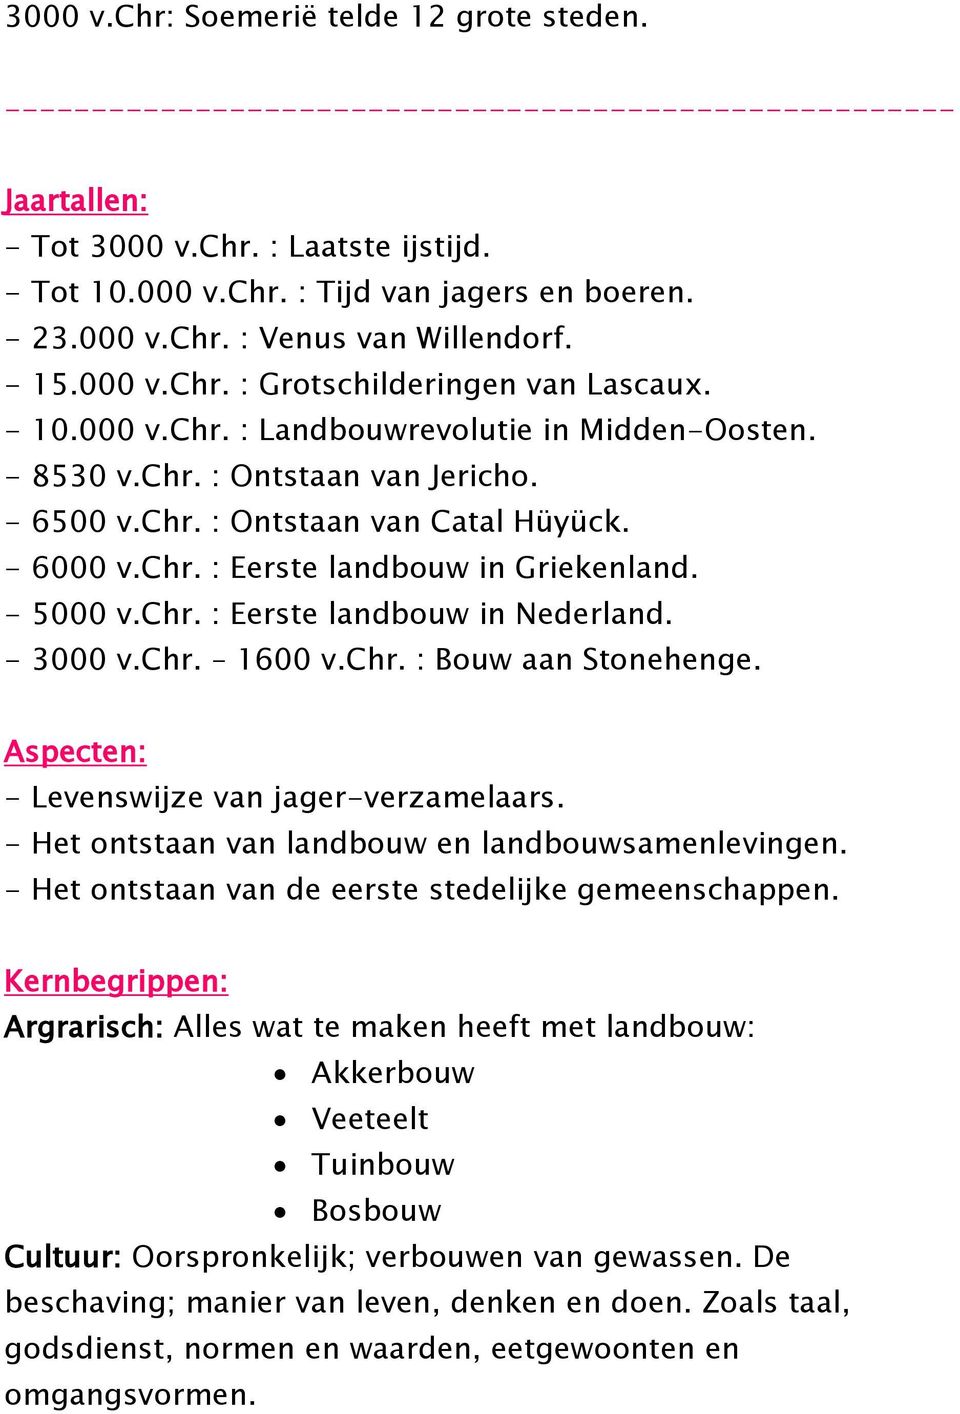 - 6000 v.chr. : Eerste landbouw in Griekenland. - 5000 v.chr. : Eerste landbouw in Nederland. - 3000 v.chr. 1600 v.chr. : Bouw aan Stonehenge. Aspecten: - Levenswijze van jager-verzamelaars.